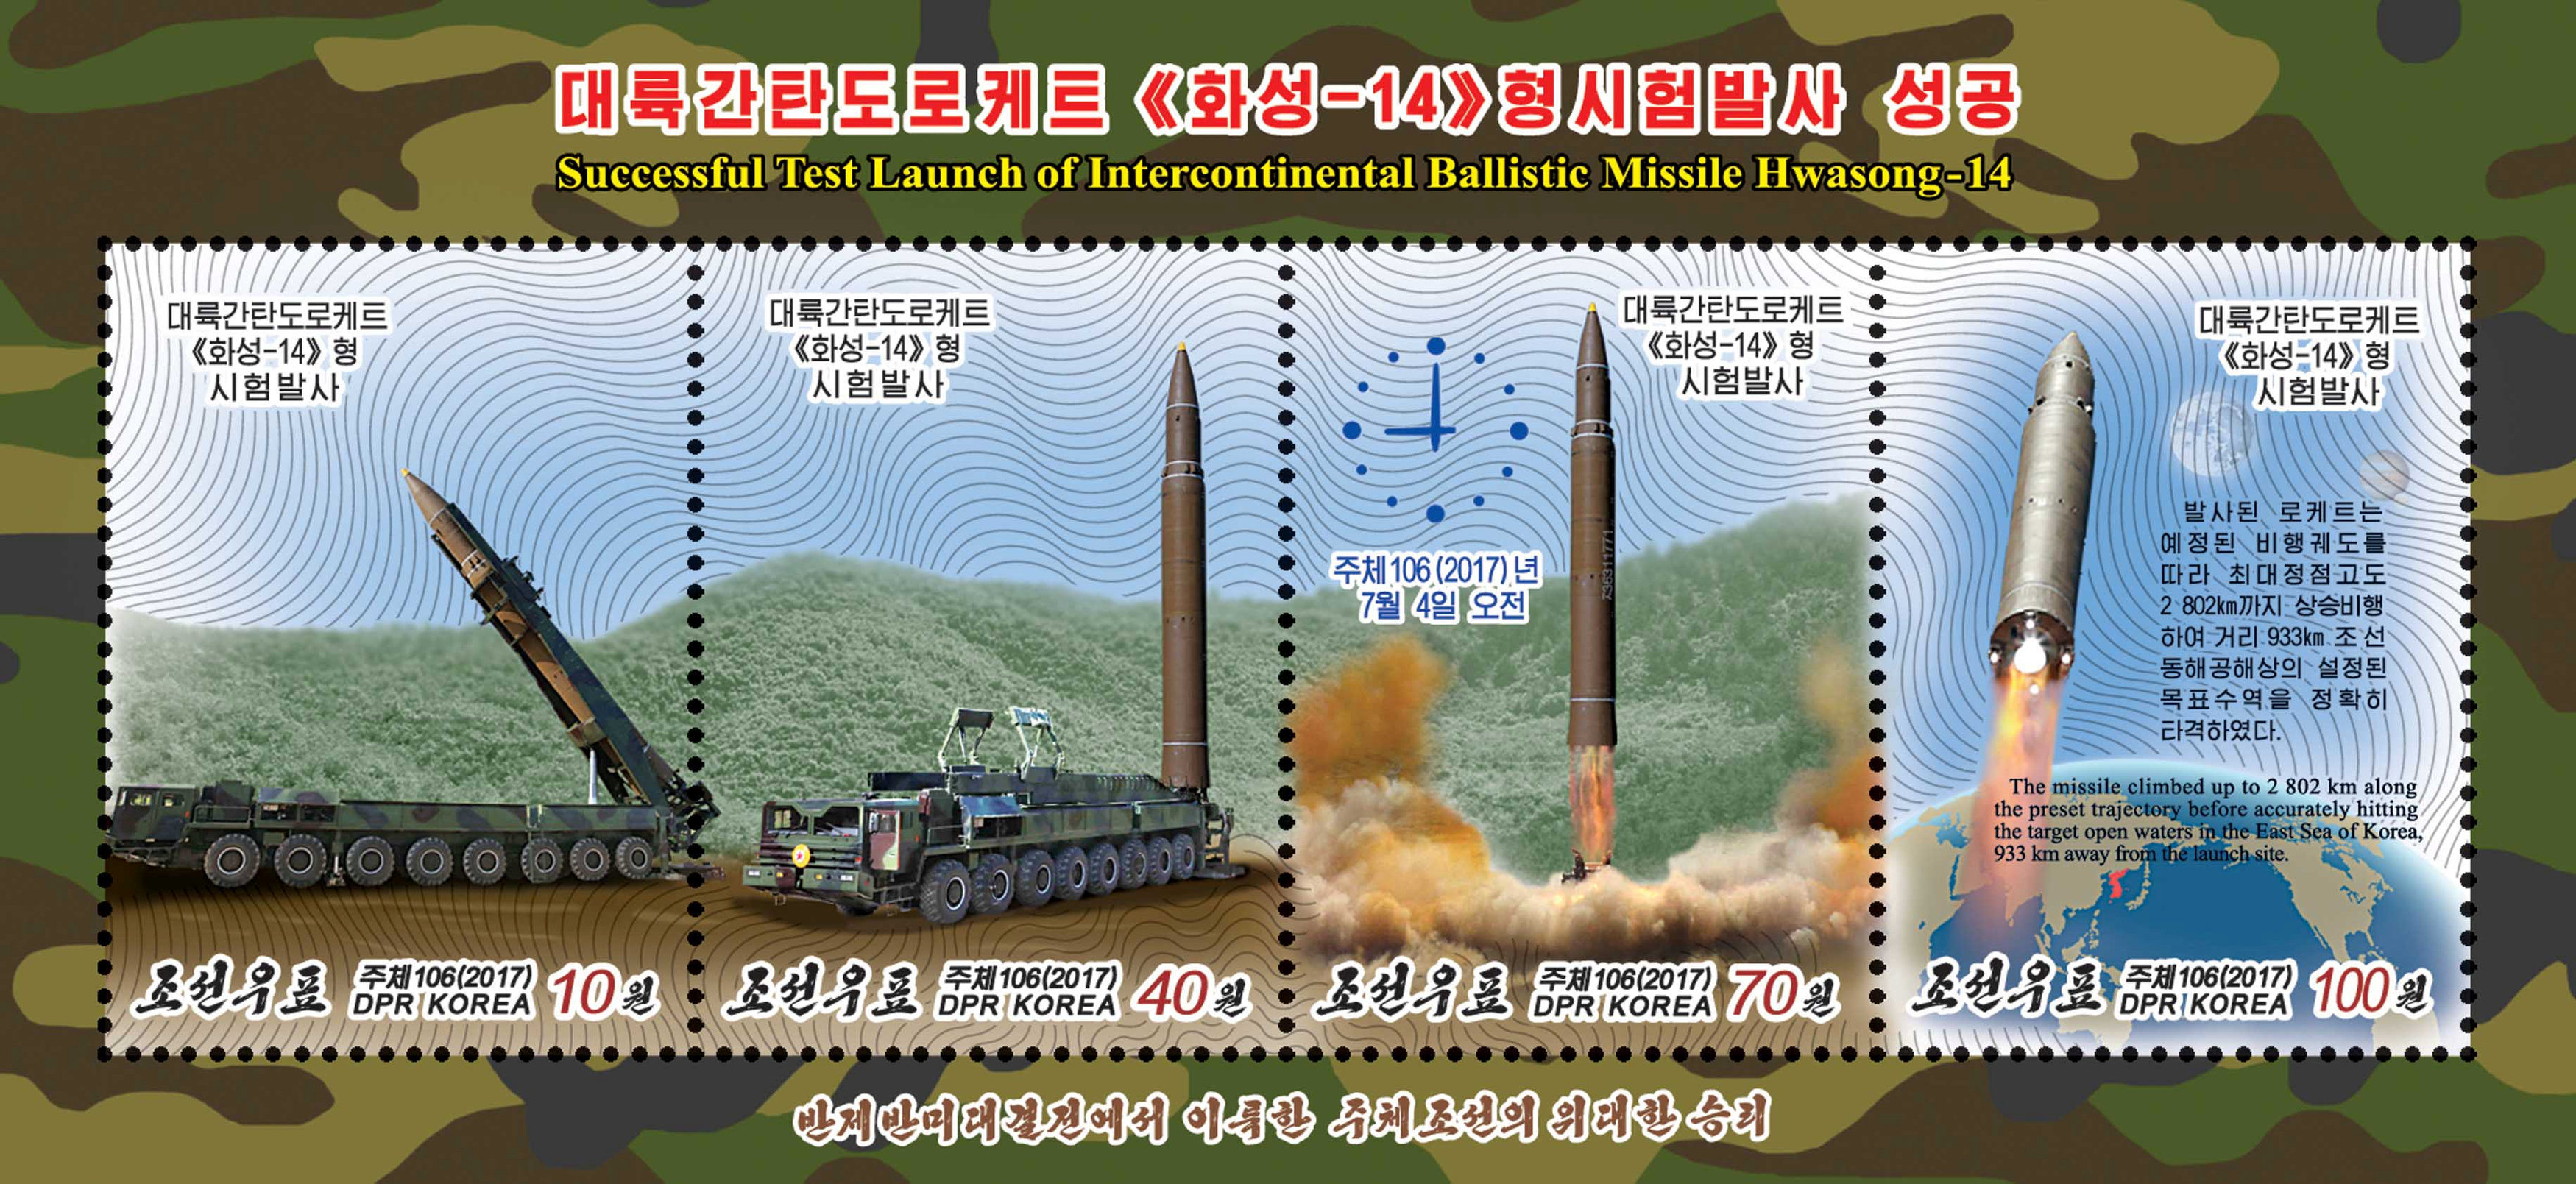 朝鲜近日发行了纪念弹道导弹“火星14型”试射的邮票。-路透社-